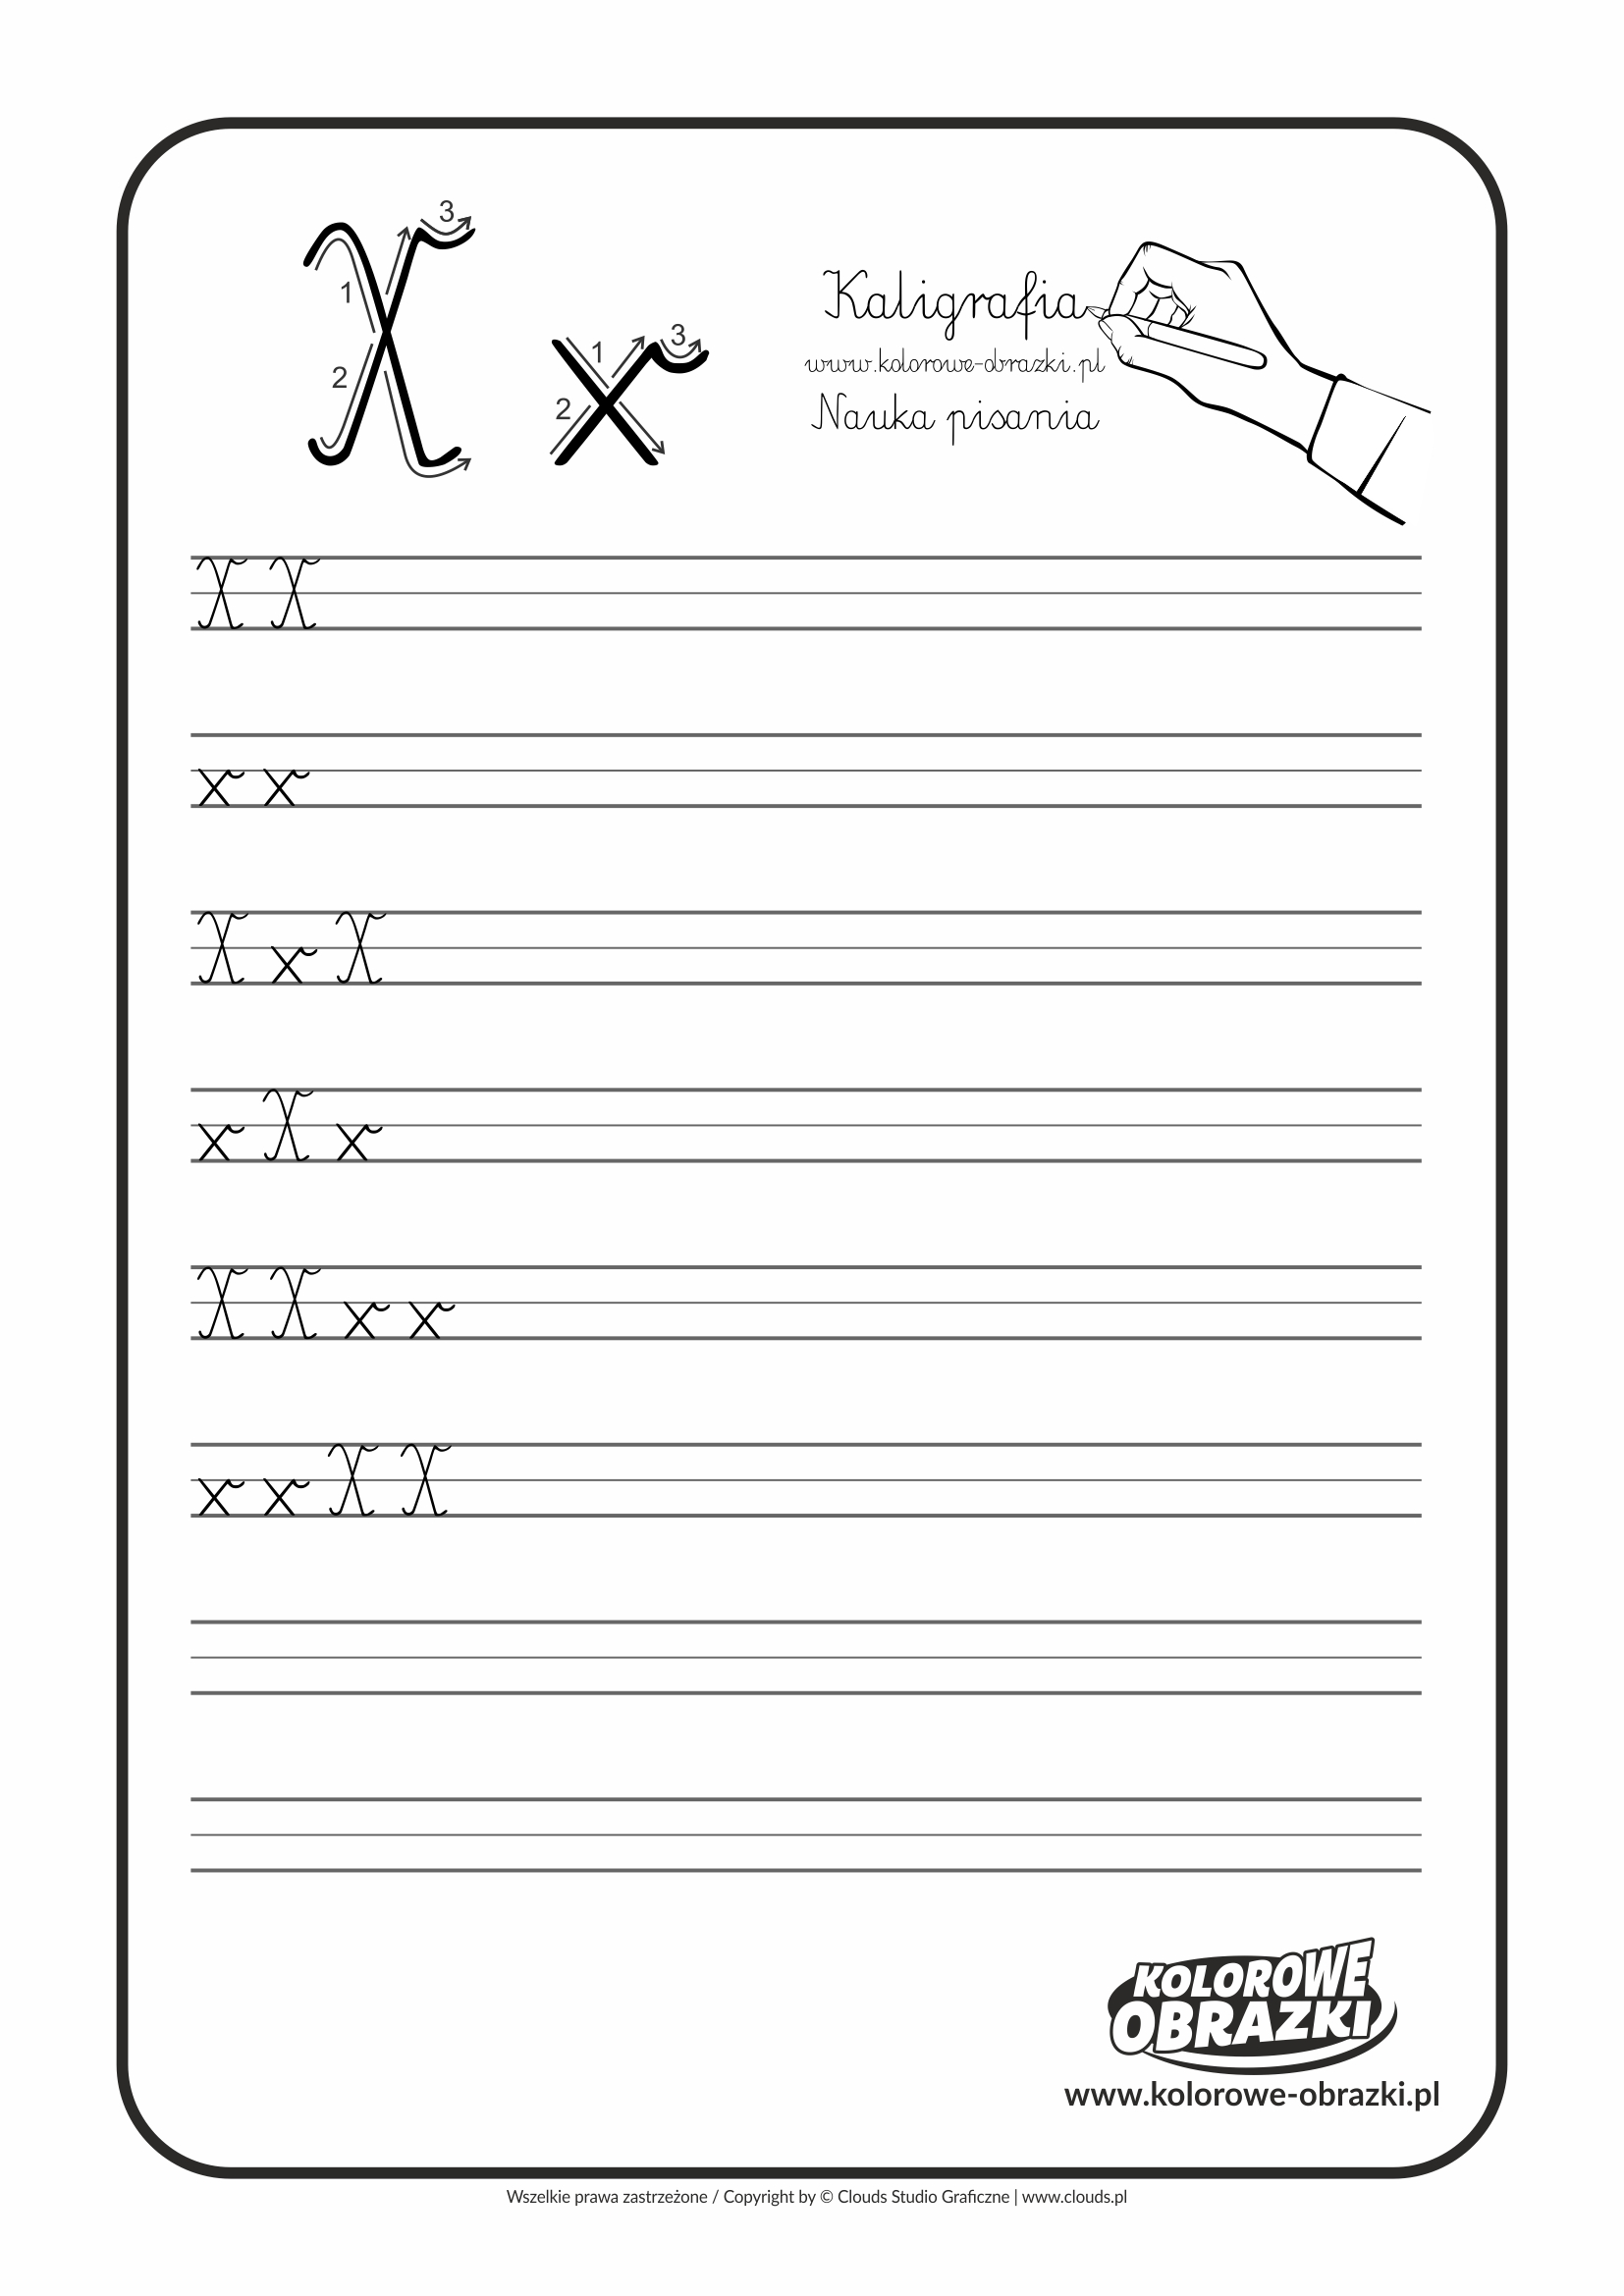 Kaligrafia dla dzieci - Ćwiczenia kaligraficzne / Litera X. Nauka pisania litery X